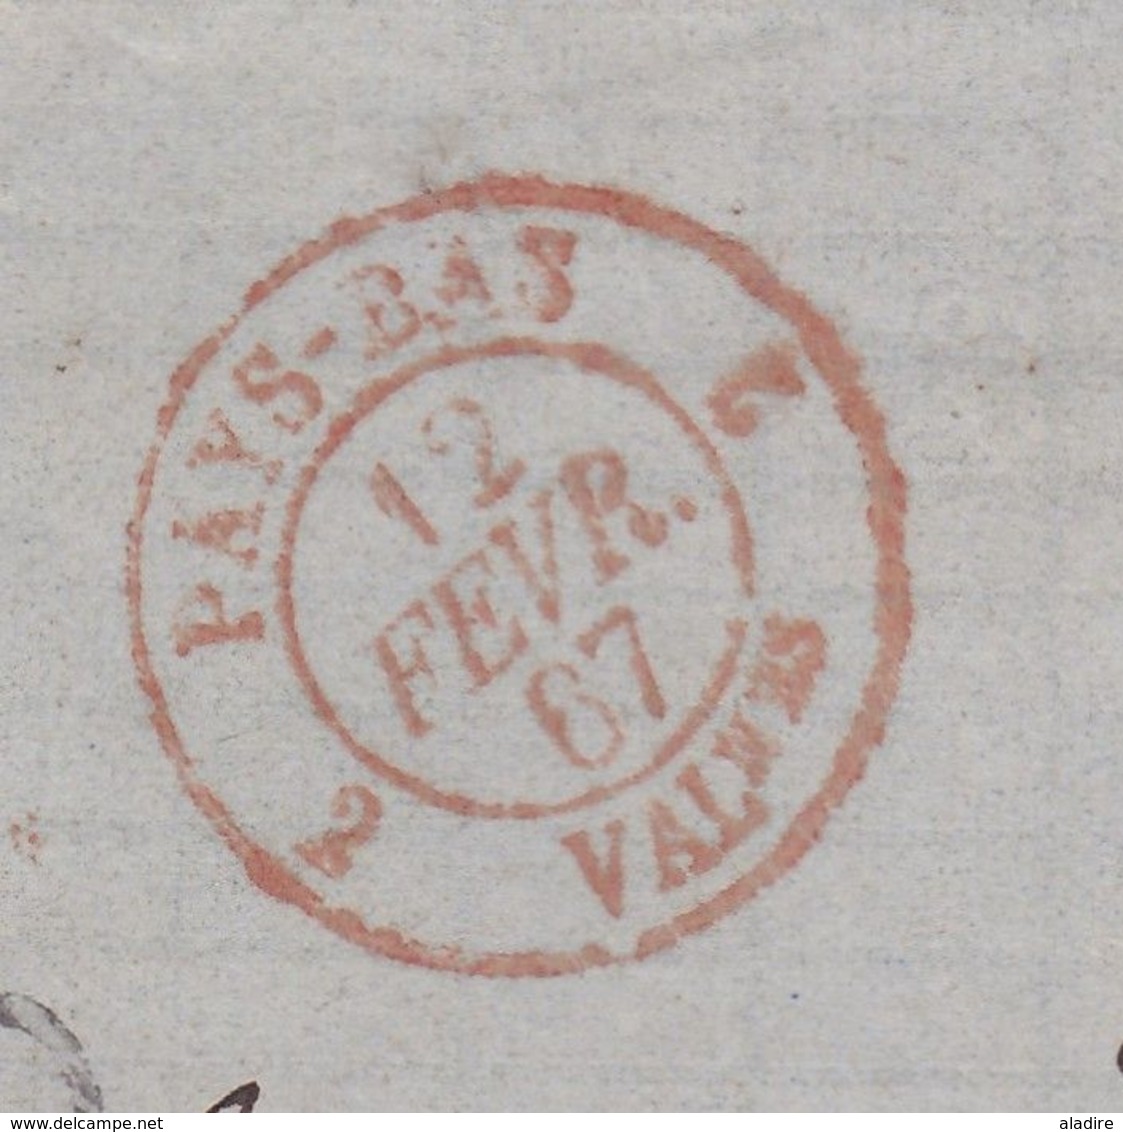 1867 - Enveloppe Pliée D'Amsterdam, Pays Bas Vers Bordeaux, France Via Valenciennes Et Paris - Marcofilia